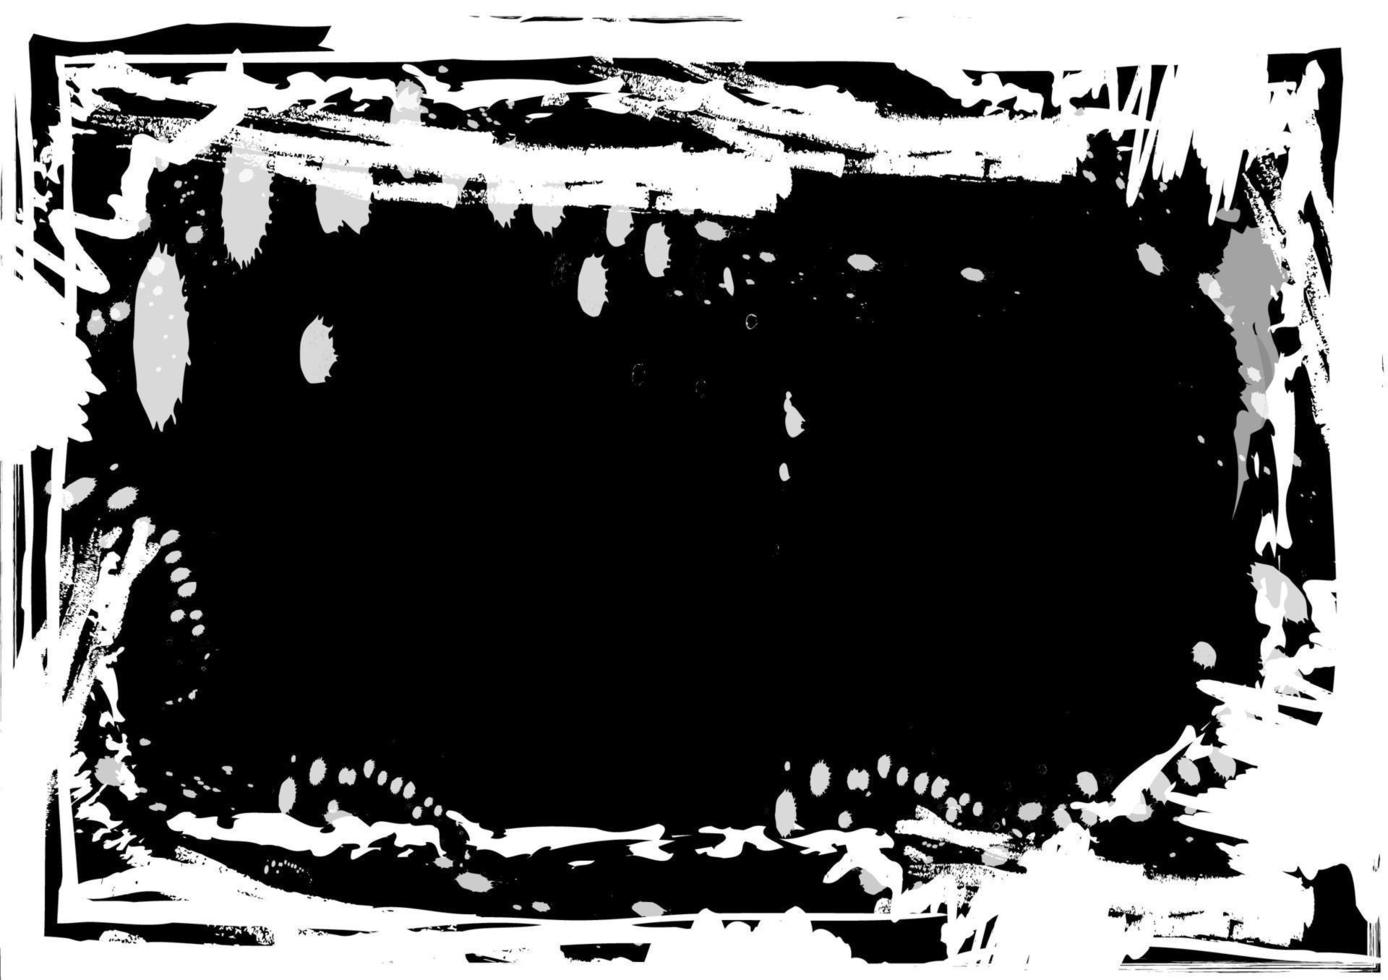 noir et blanc grunge tache d'encre tache artistique cadre abstrait toile de fond illustration vectorielle vecteur